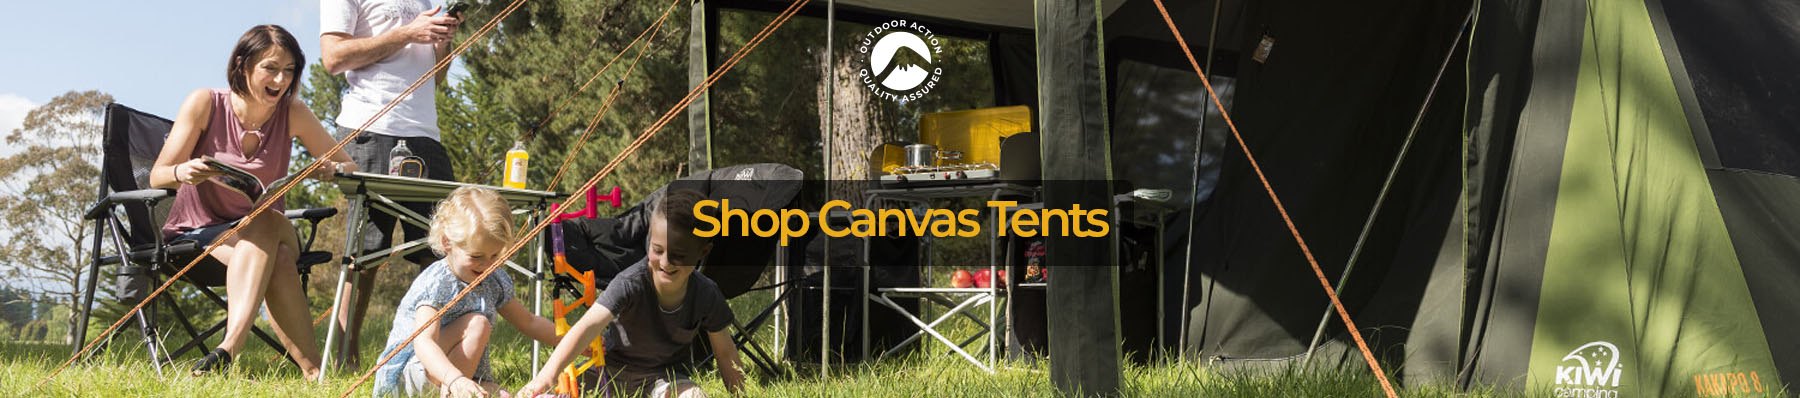 Shop Canvas Tents